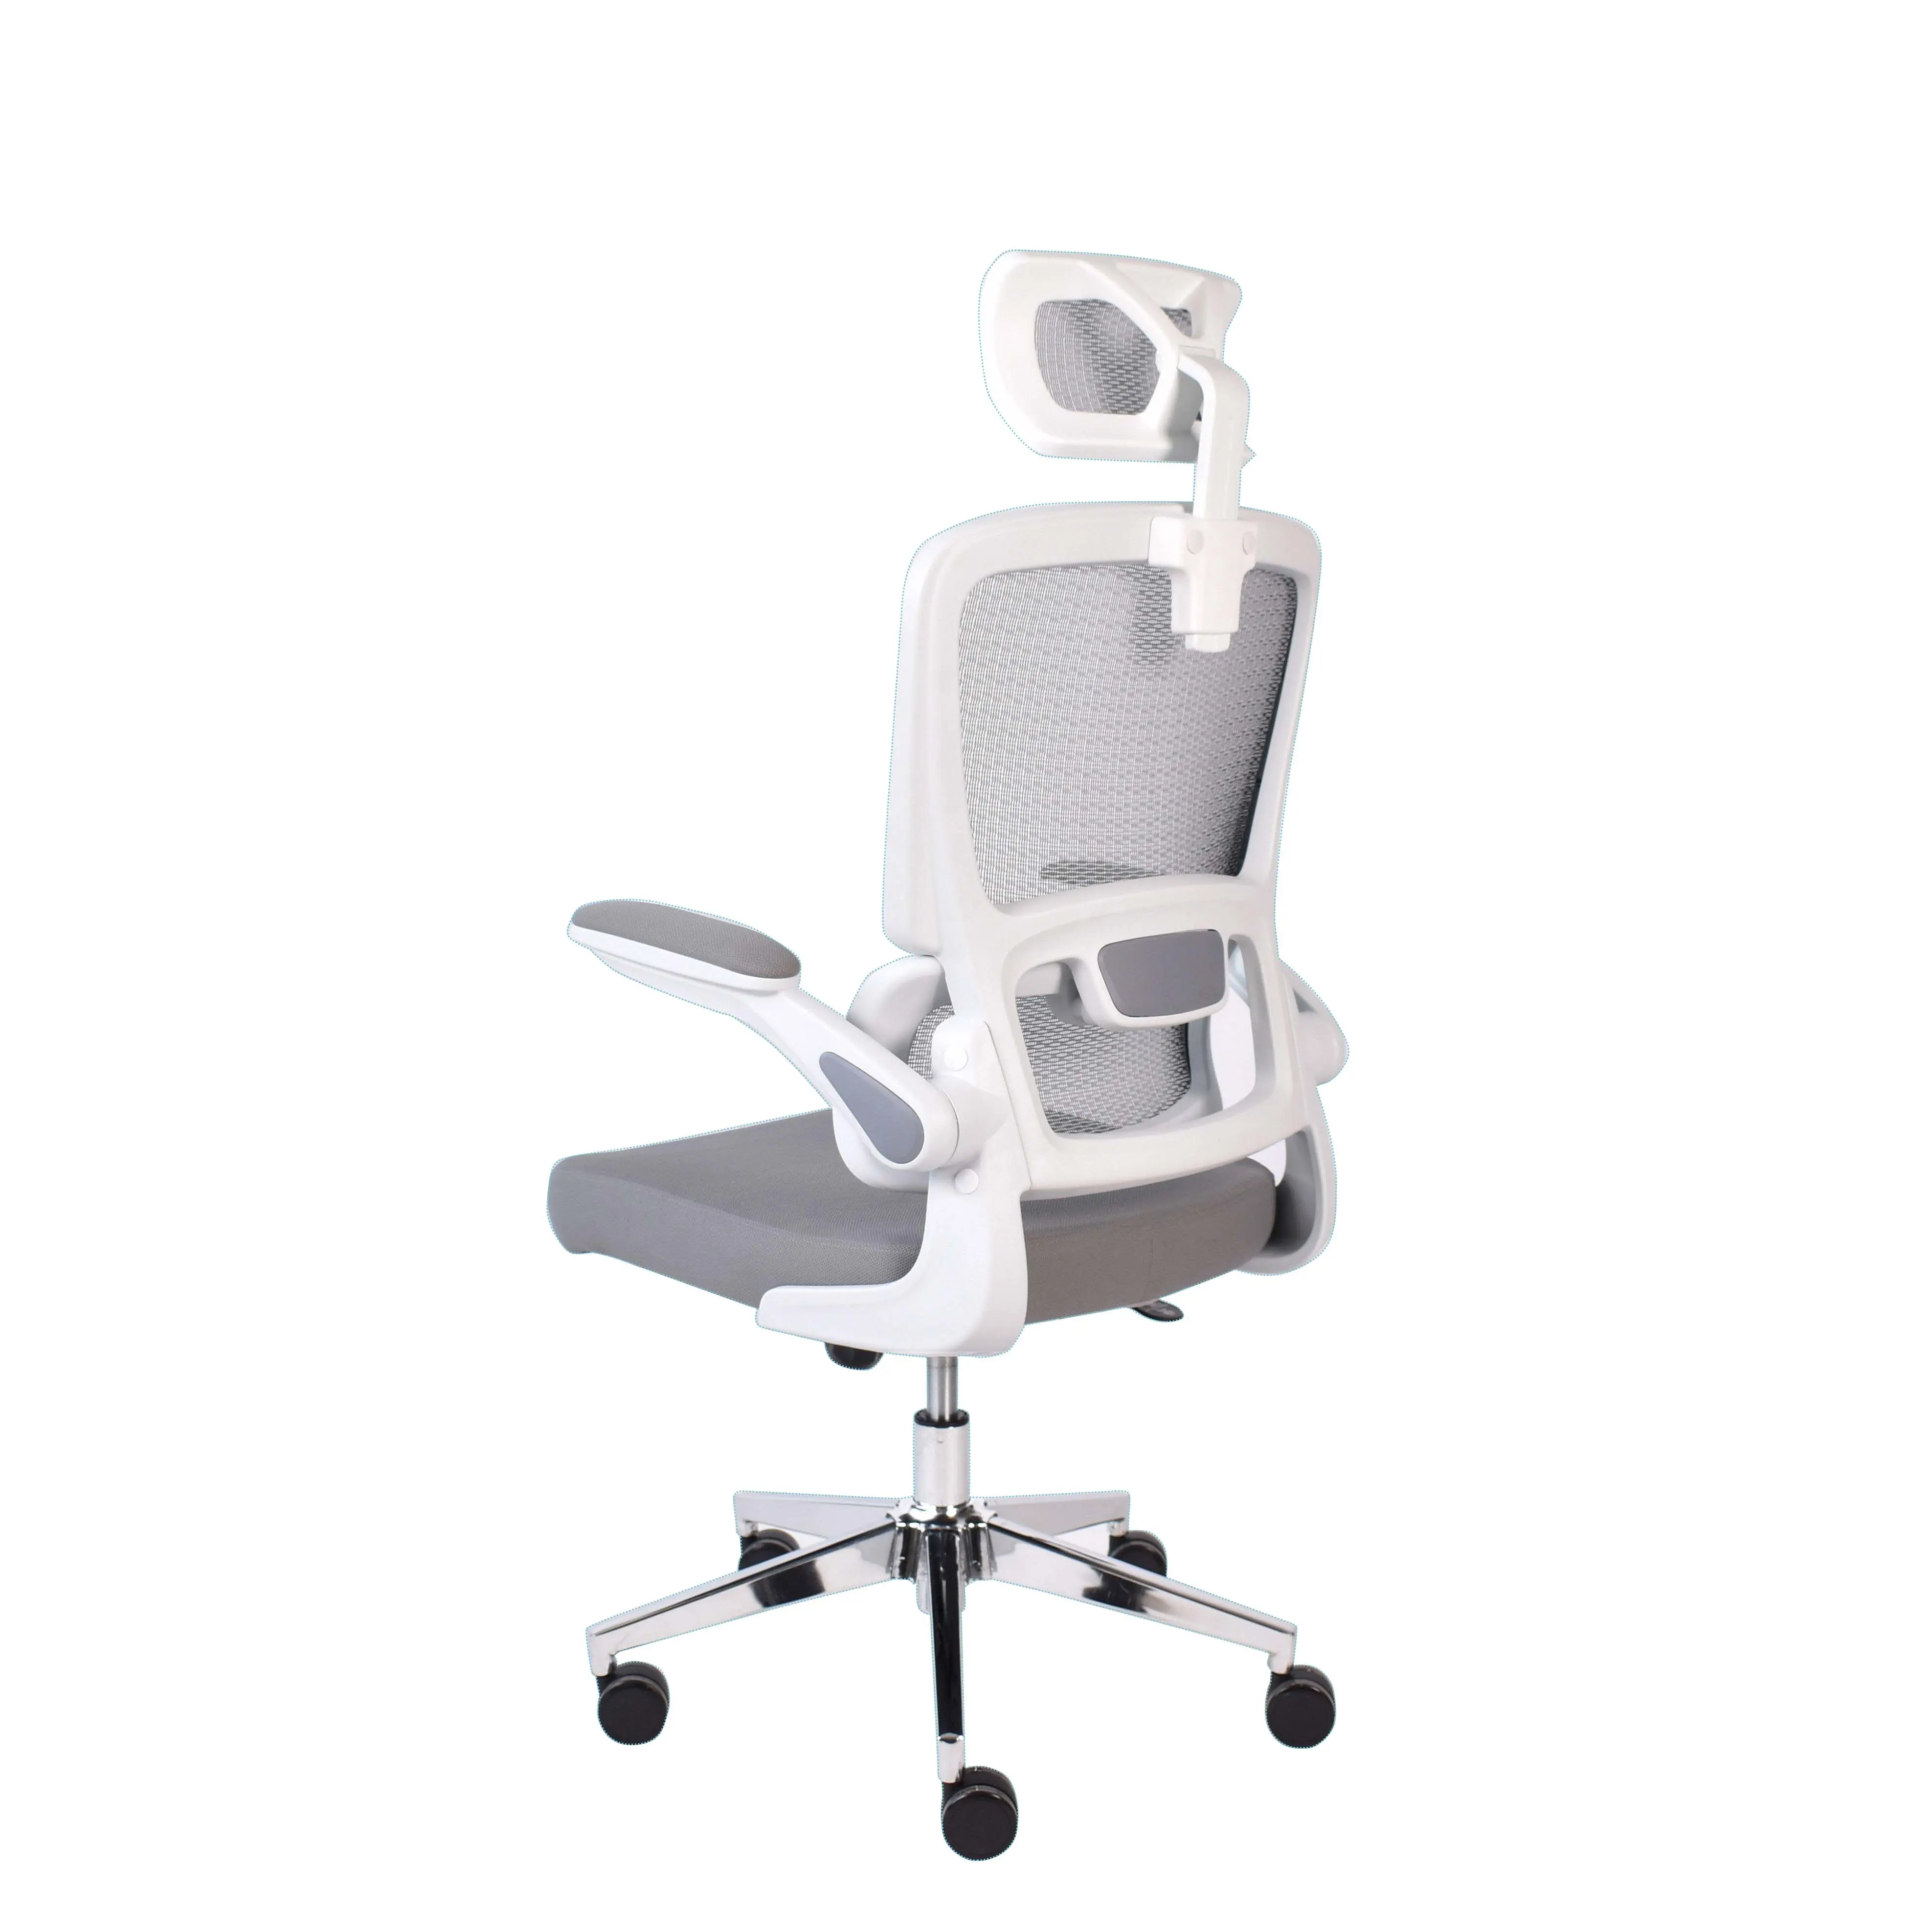 Heimamts-Study-Task-Stuhl grau mesh schwenkbar ergonomischer Büros-Computer-Schreibtisch-Stuhl mit Armlehne